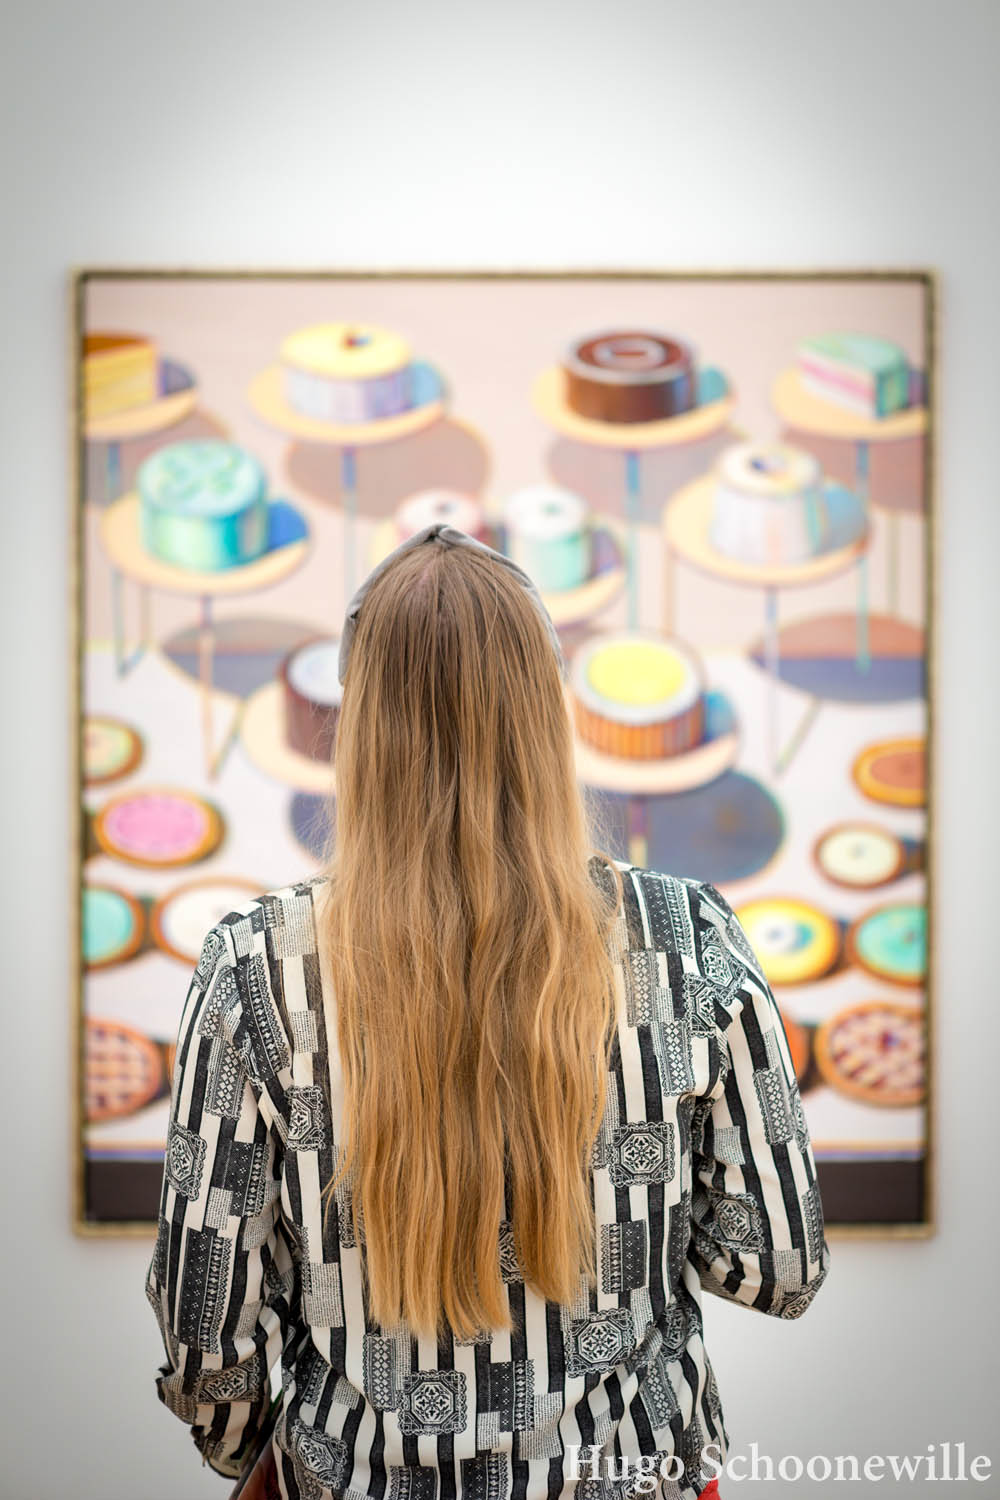 Kijkend naar een schilderij van Wayne Thiebaud in Museum Voorlinden met allerlei taarten erop.